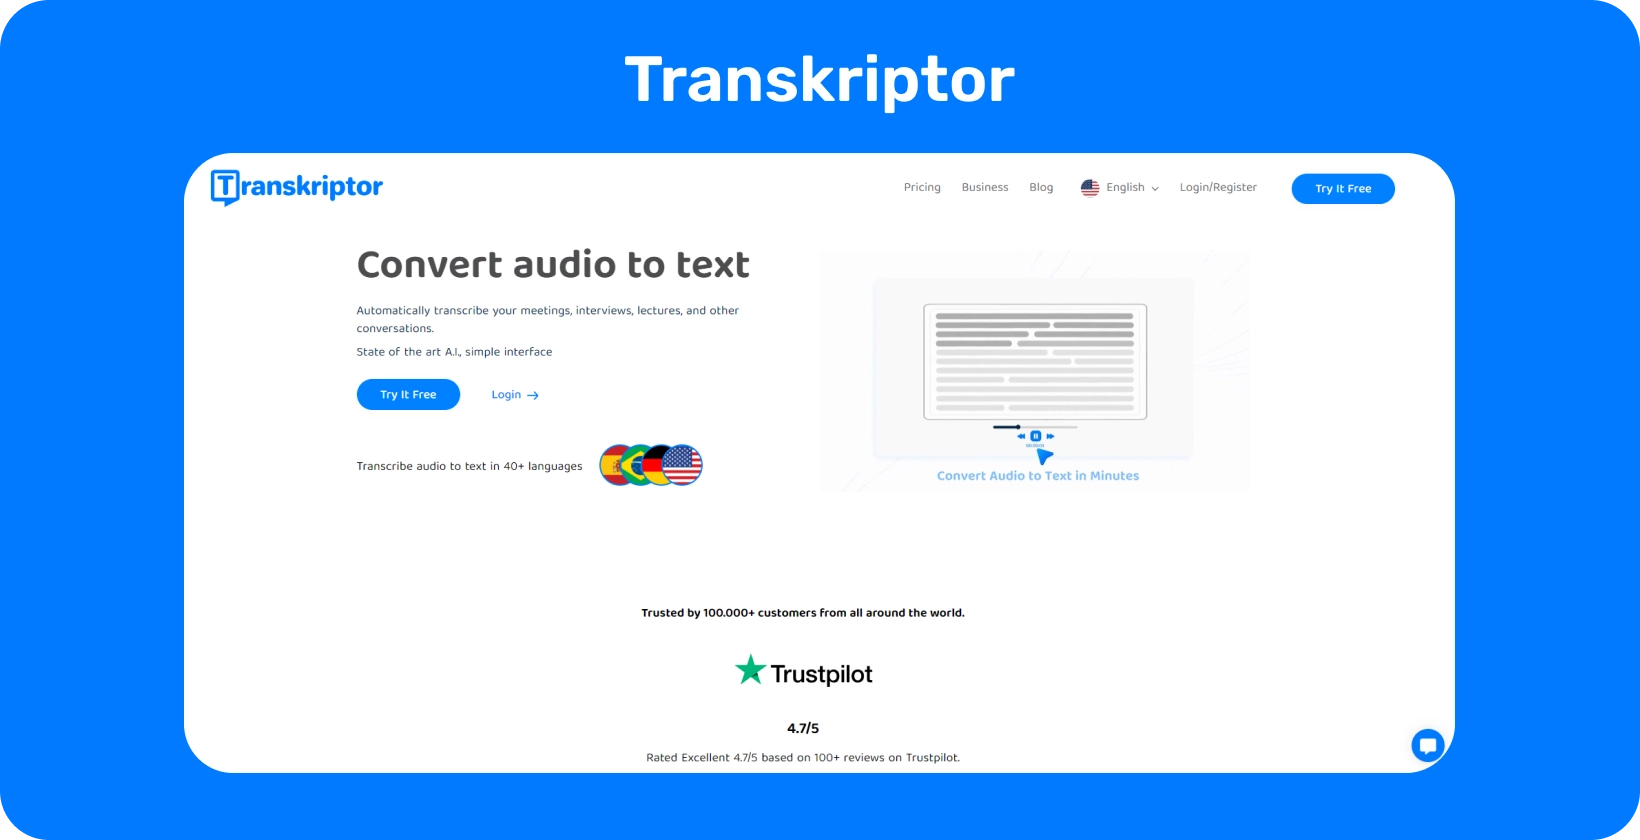 Інтерфейс Transkriptor демонструє функцію асистента для нарад, що спрощує якісну транскрипцію досліджень.